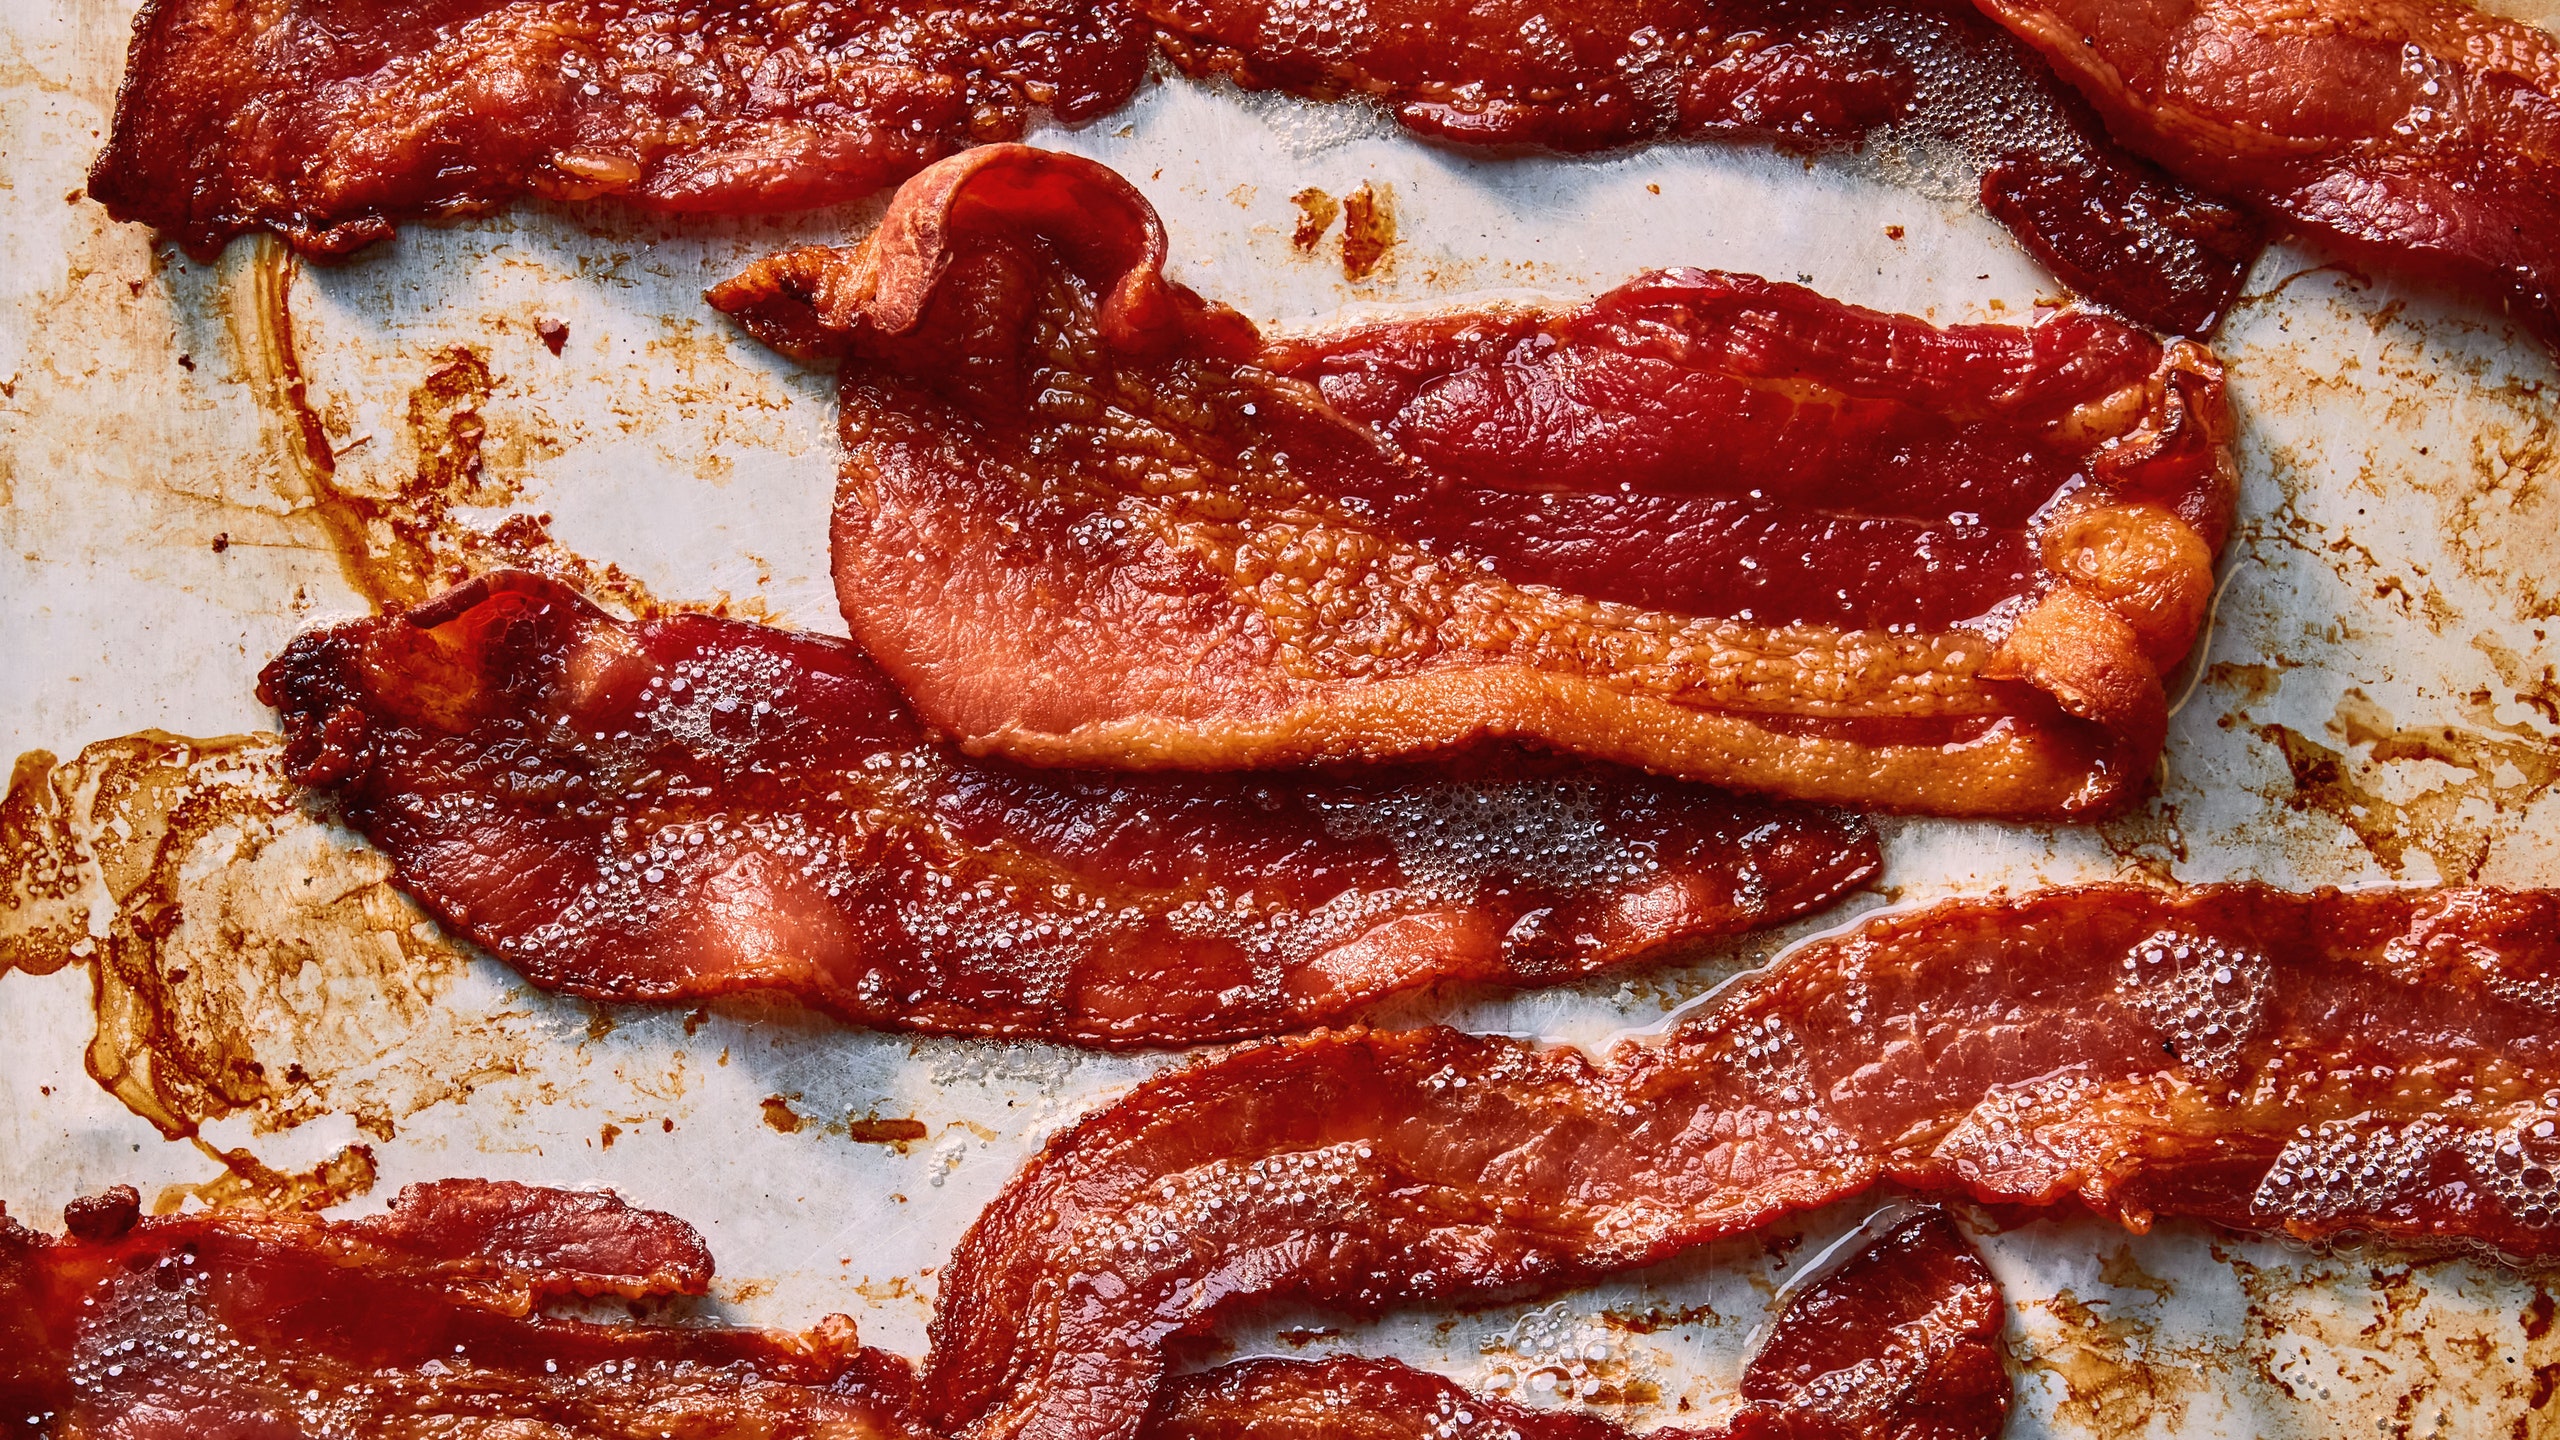 Strips of crispy bacon on a baking sheet.